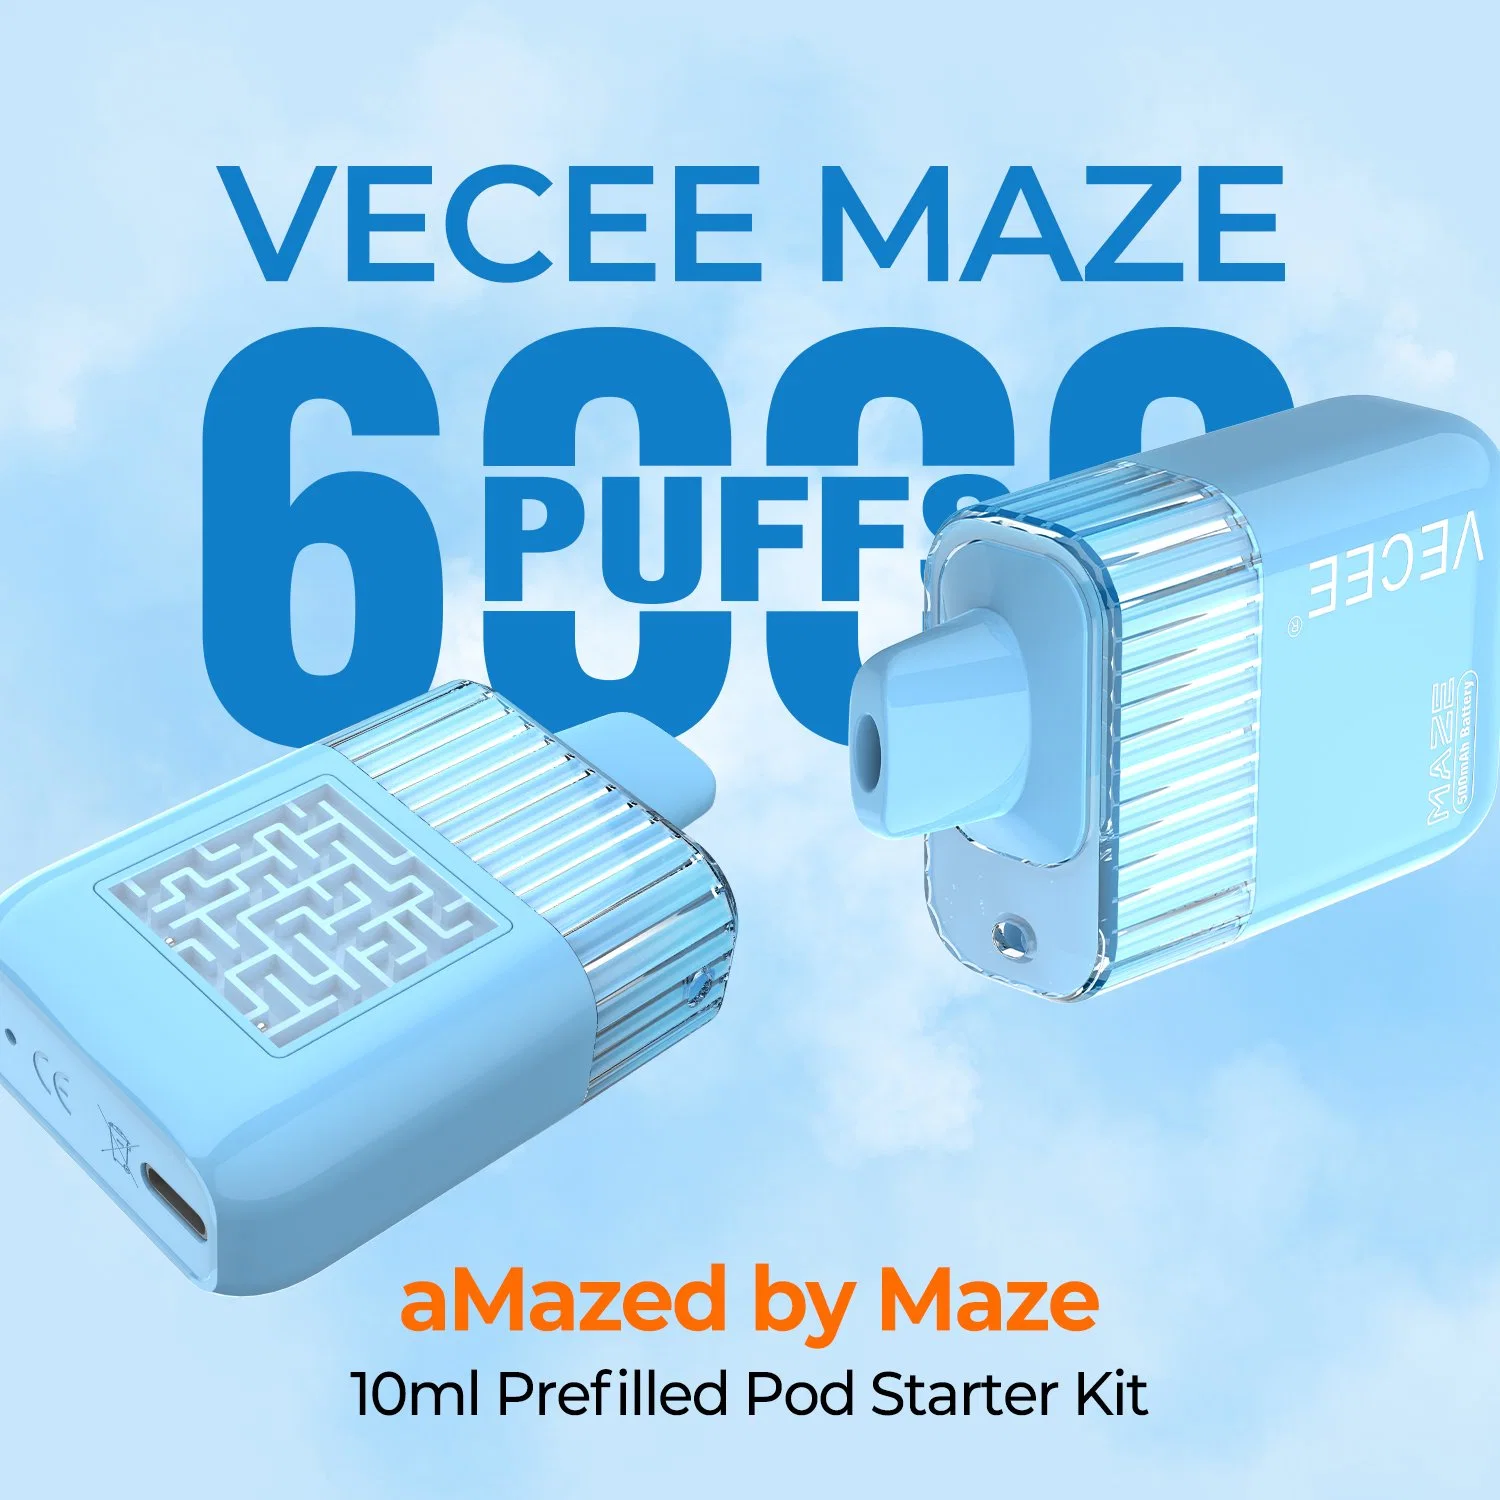 Vecee-Maze Disposable Pod Wholesale/Supplier Custom Vaporizer Pen 5% Salt Nicotine Rechargeable 6000 Puff Bar Best E Cigarette Electronic Hookah